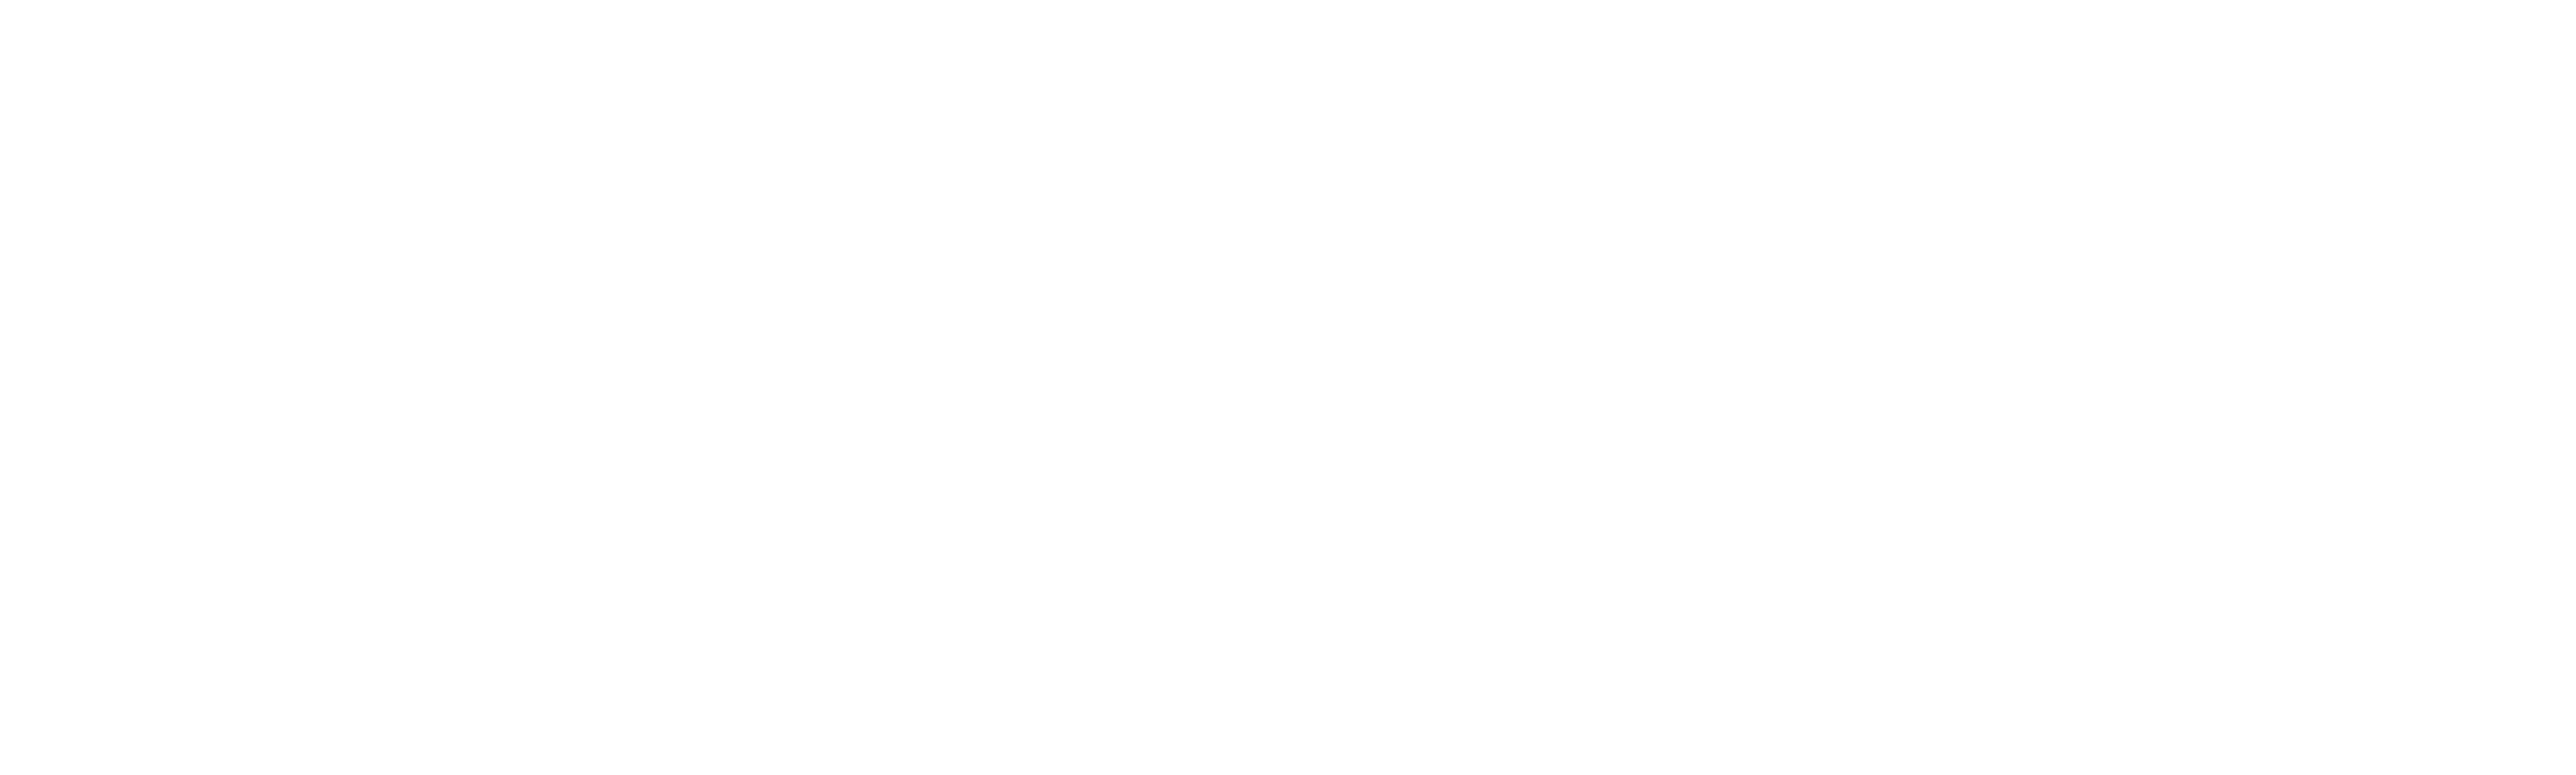 5 perguntas sobre a série “His Dark Materials”, da HBO